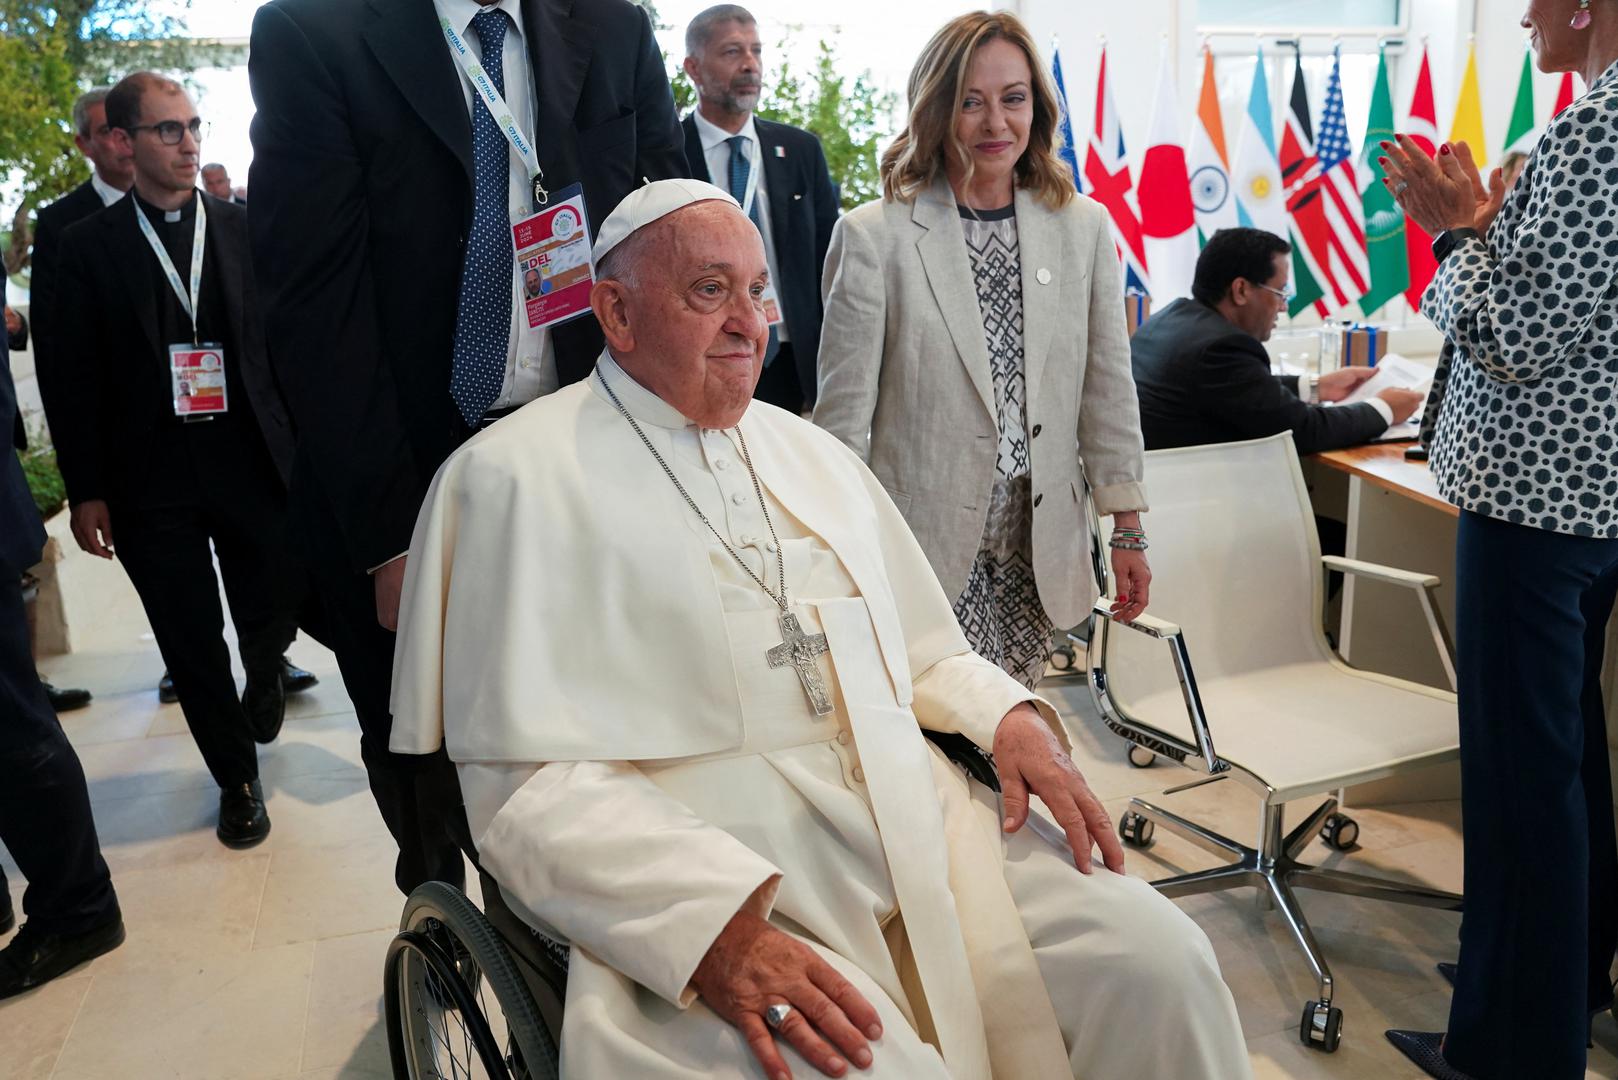 Niz svjetskih poglavara srdačno je zagrlio 87-godišnjeg papu dok je u invalidskim kolicima obilazio golemi ovalni stol jer mu godine i slabost ograničavaju pokretljivost.